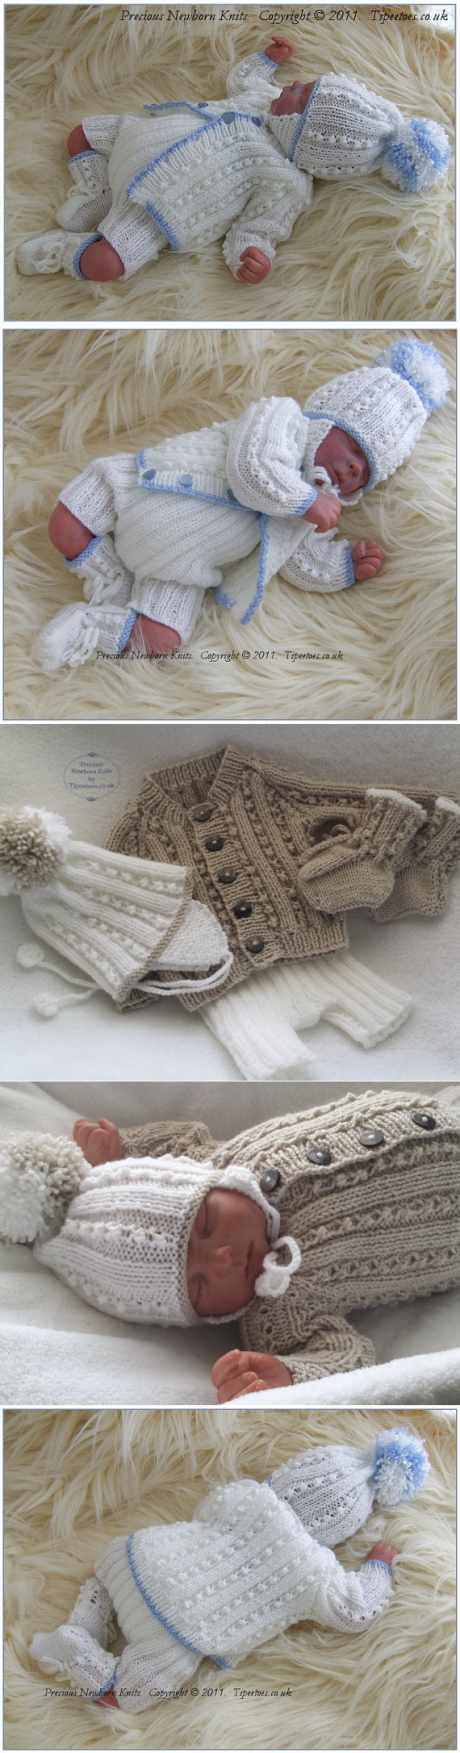 New Born Knitting Patterns Ba Knitting